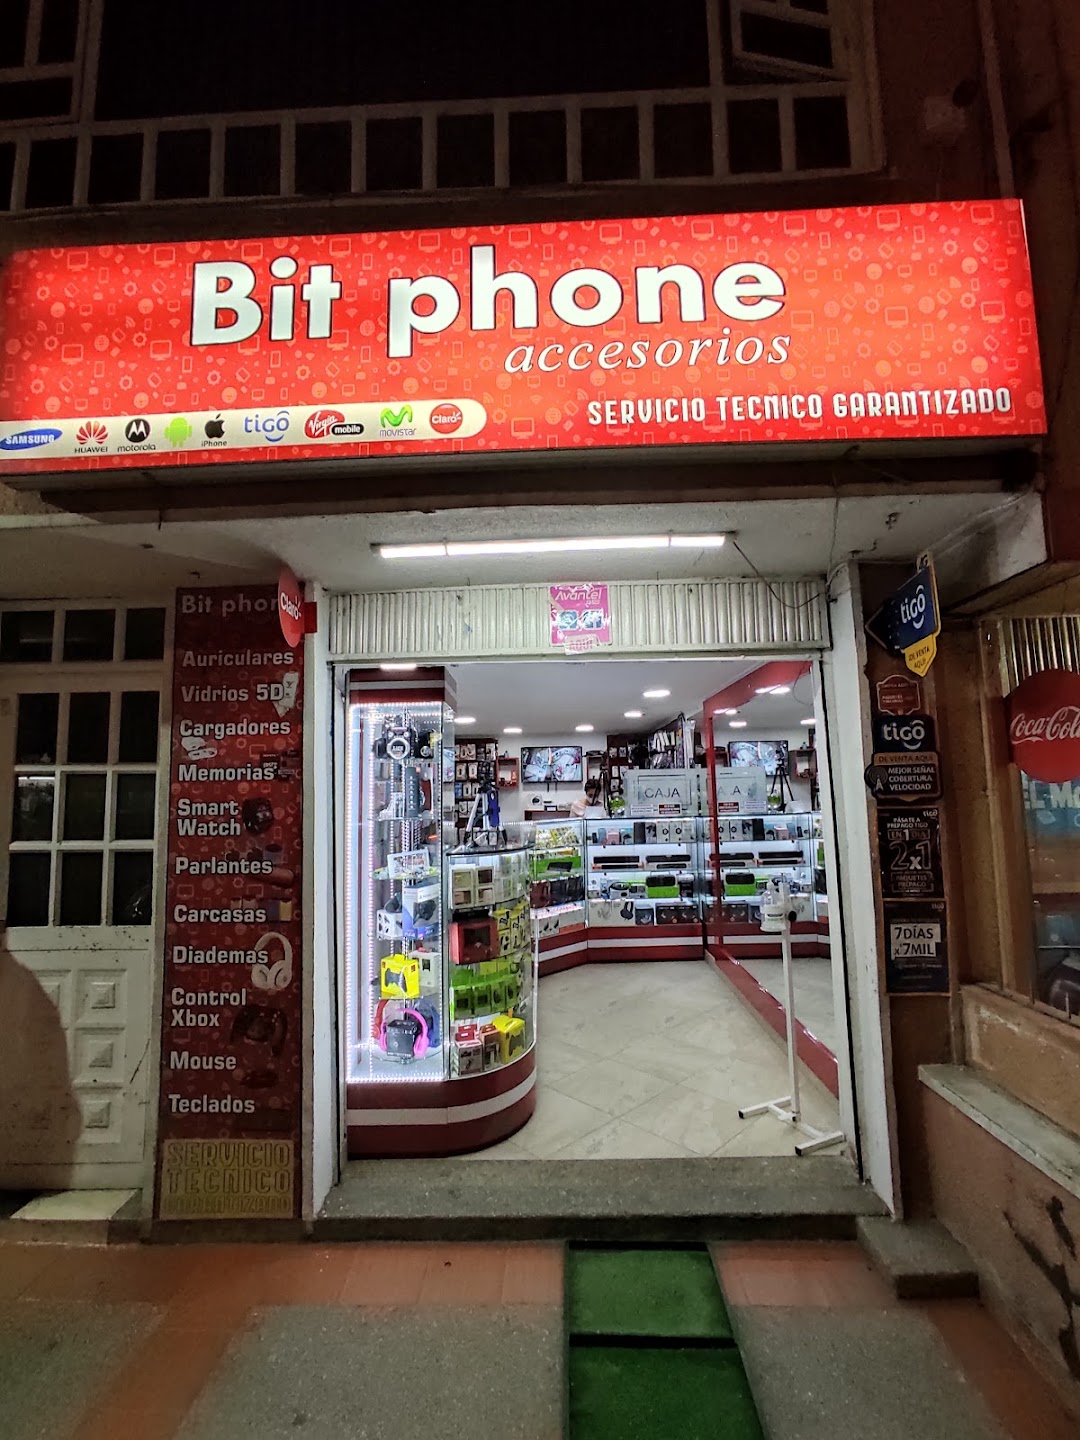 Bit.phoneAccesorios